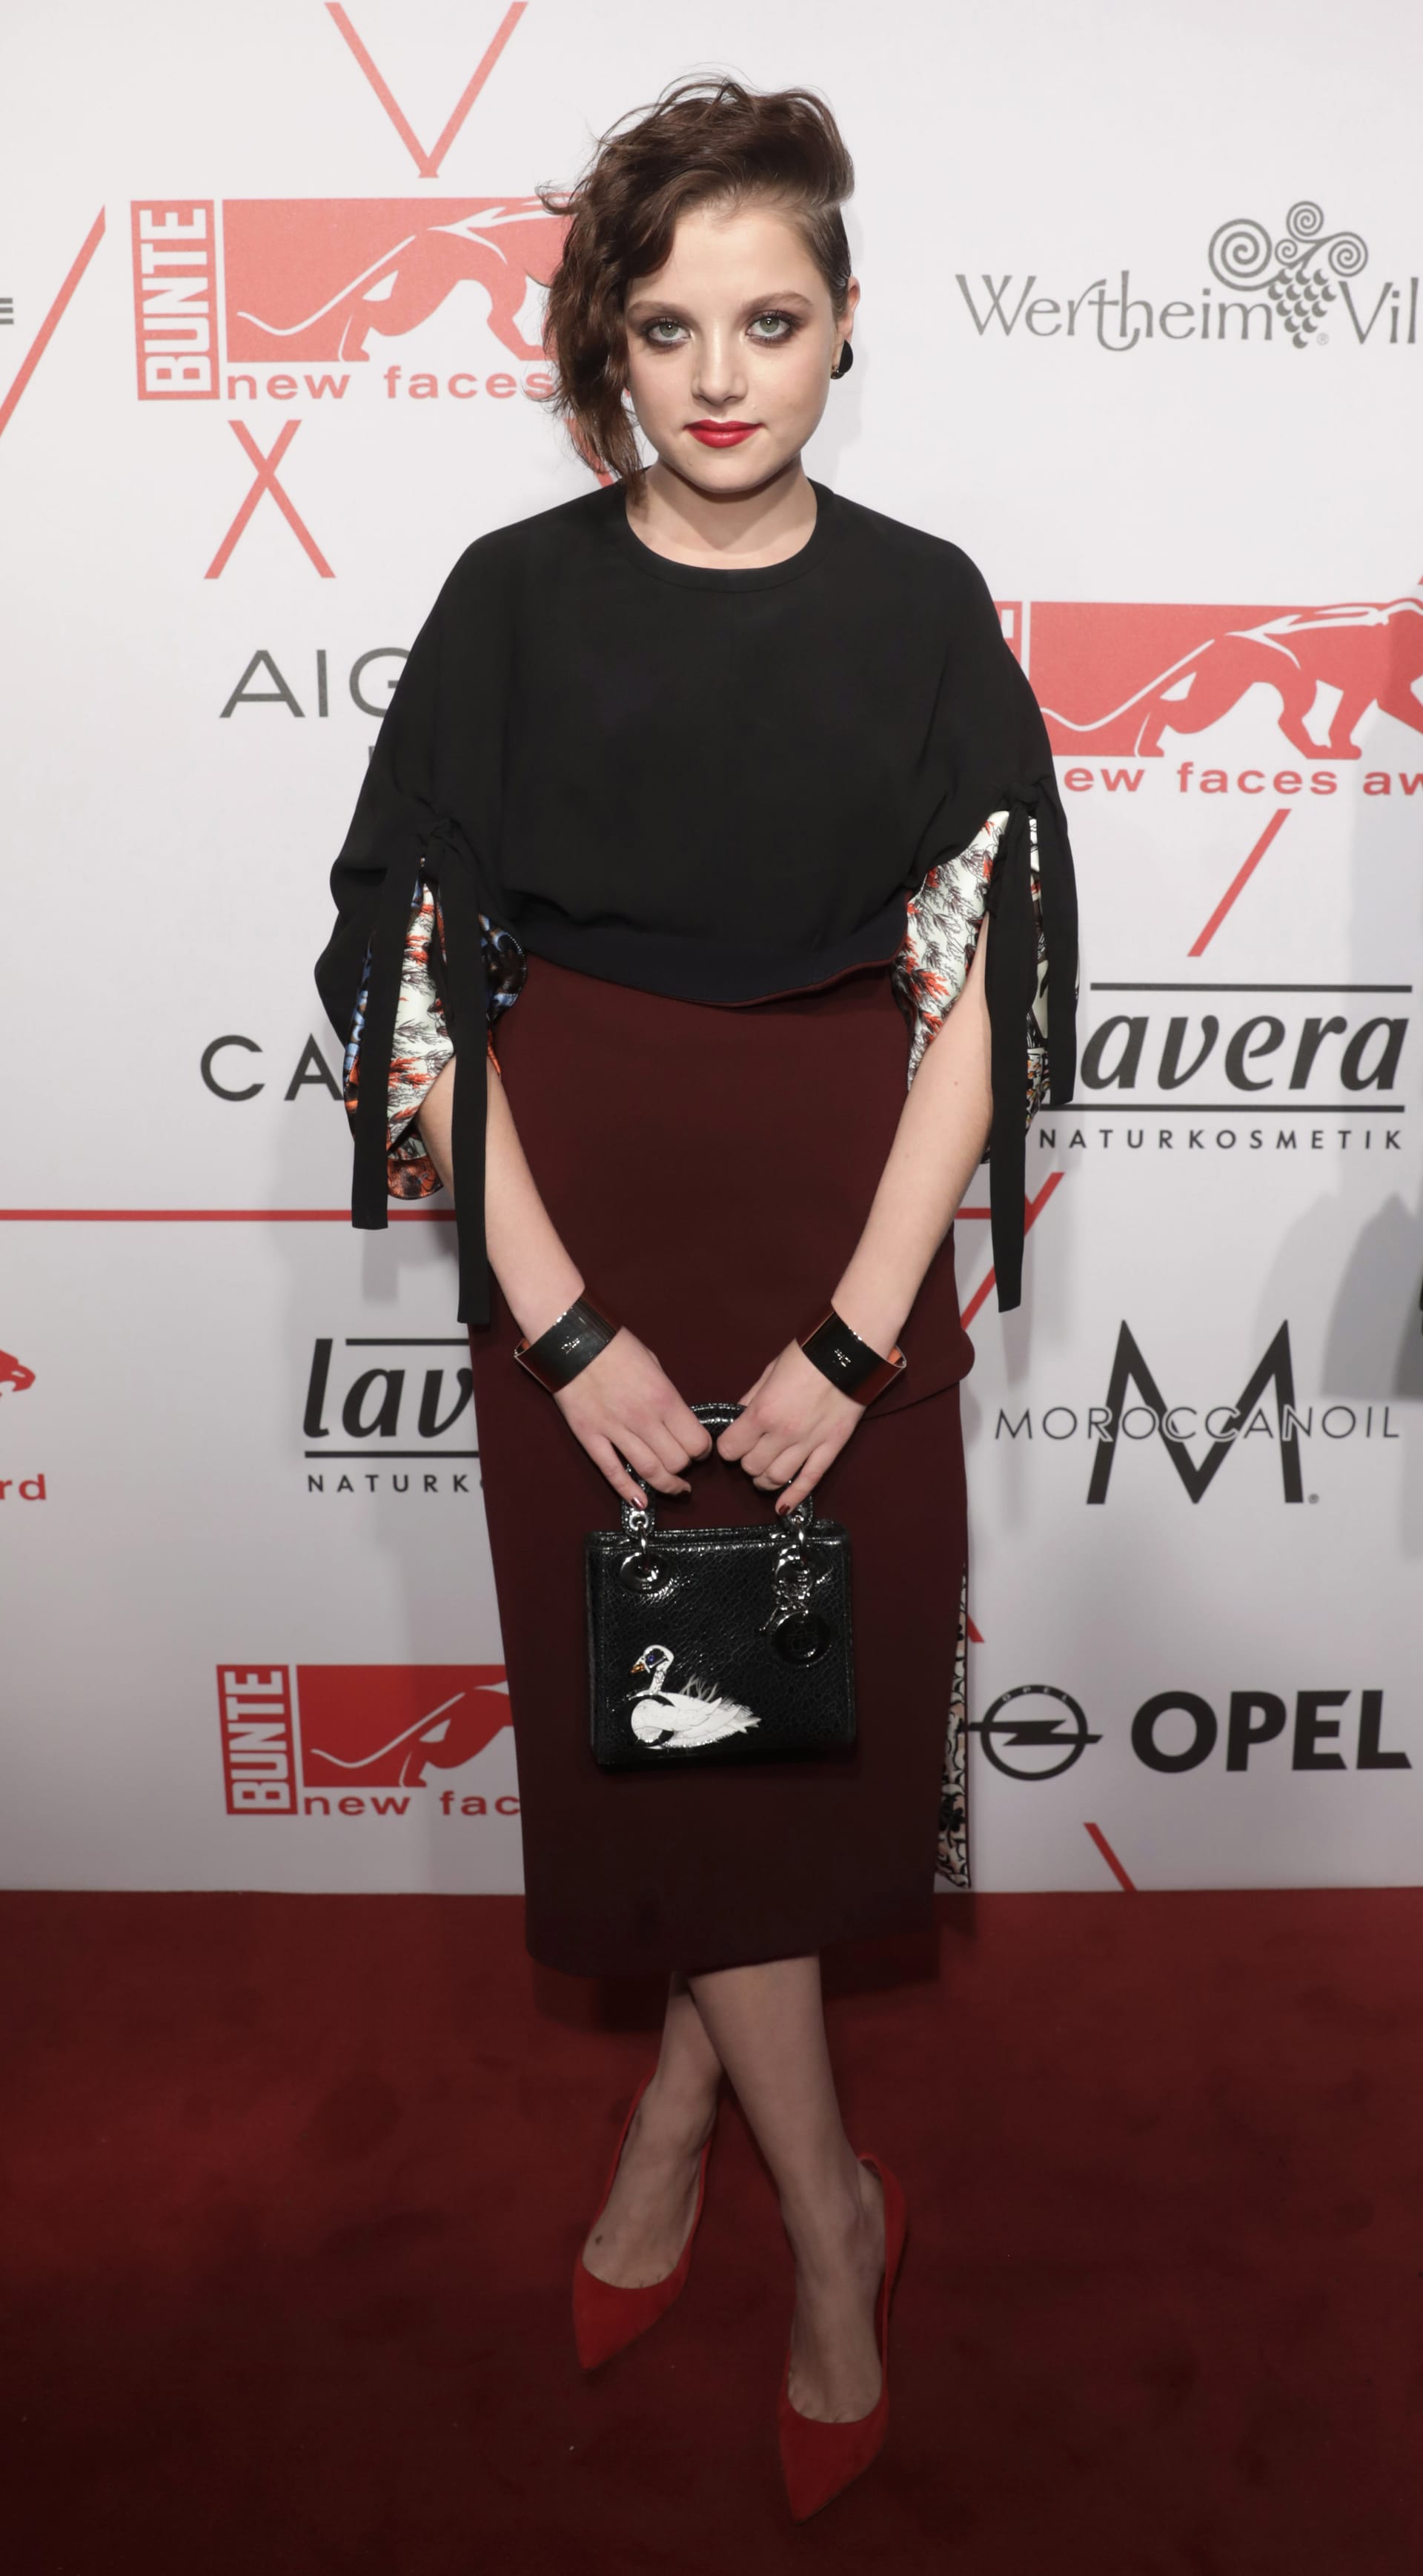 Schauspielerin Jella Haase wurde als "Young Style Icon" ausgezeichnet.